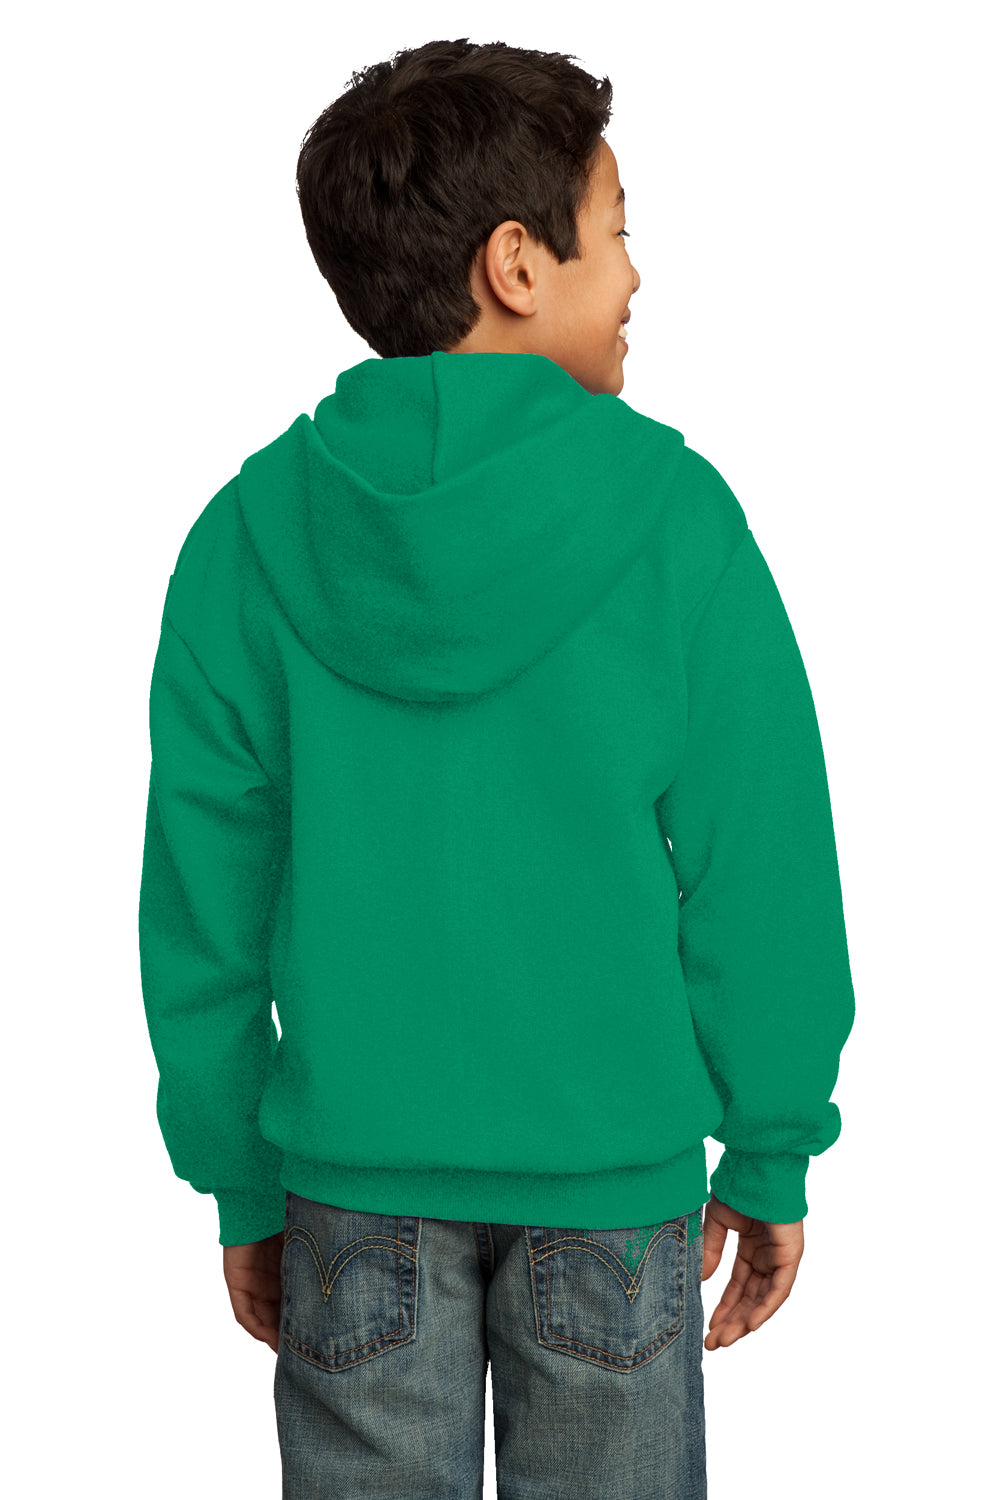 Port & Company PC90YZH Youth Core Fleece Full Zip Hooded Sweatshirt Hoodie Kelly Green Back